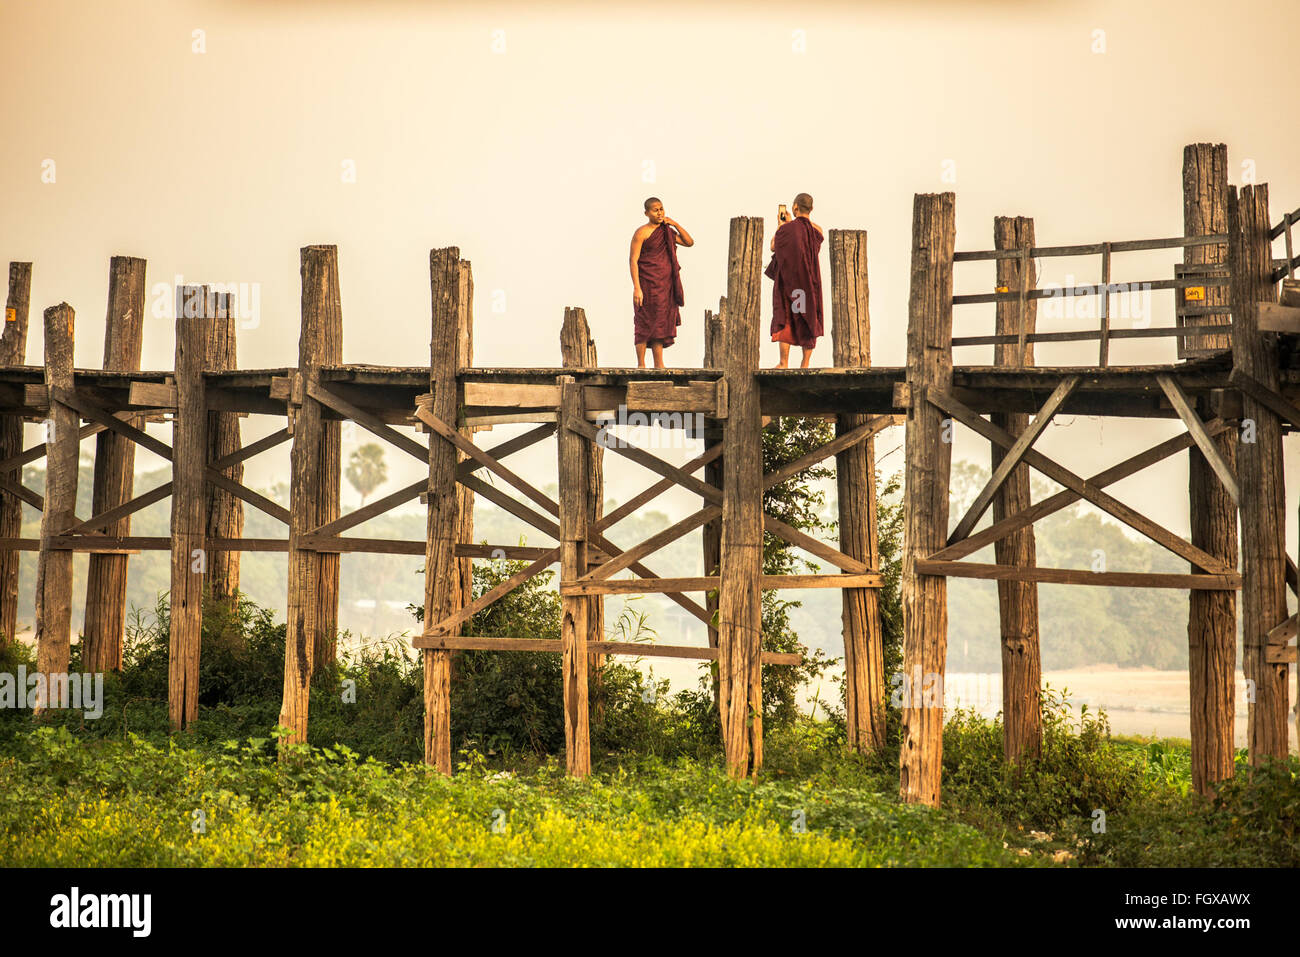 Deux moines bouddhistes taking photograph with mobile phone sur le pont U Bein historiques en bois Banque D'Images